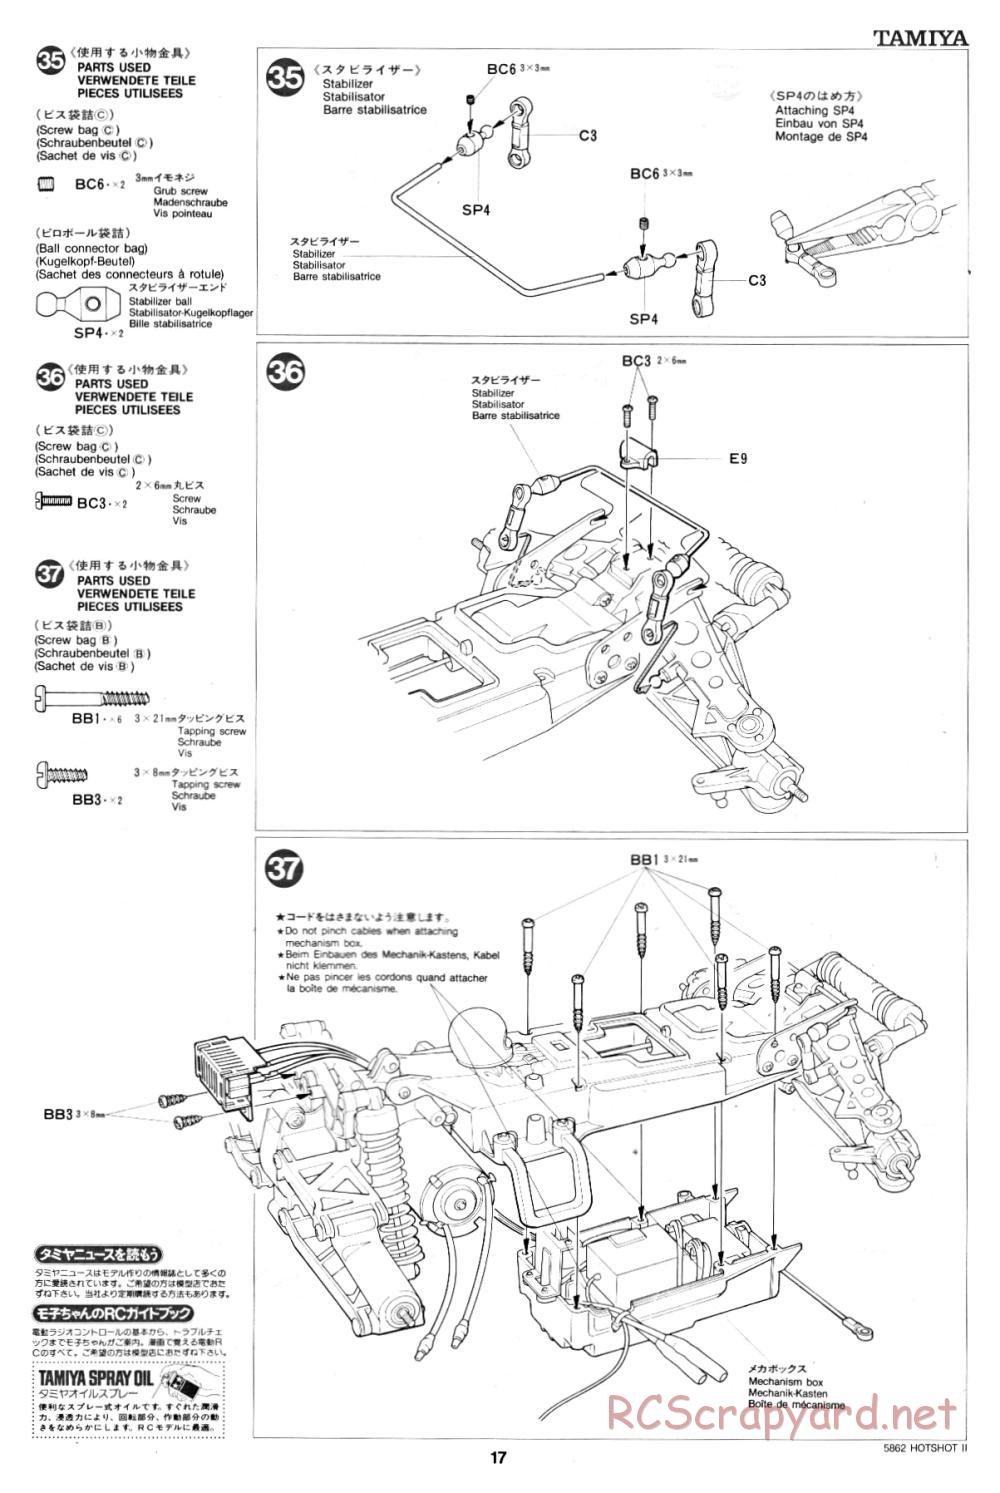 Tamiya - Hot-Shot II - 58062 - Manual - Page 17